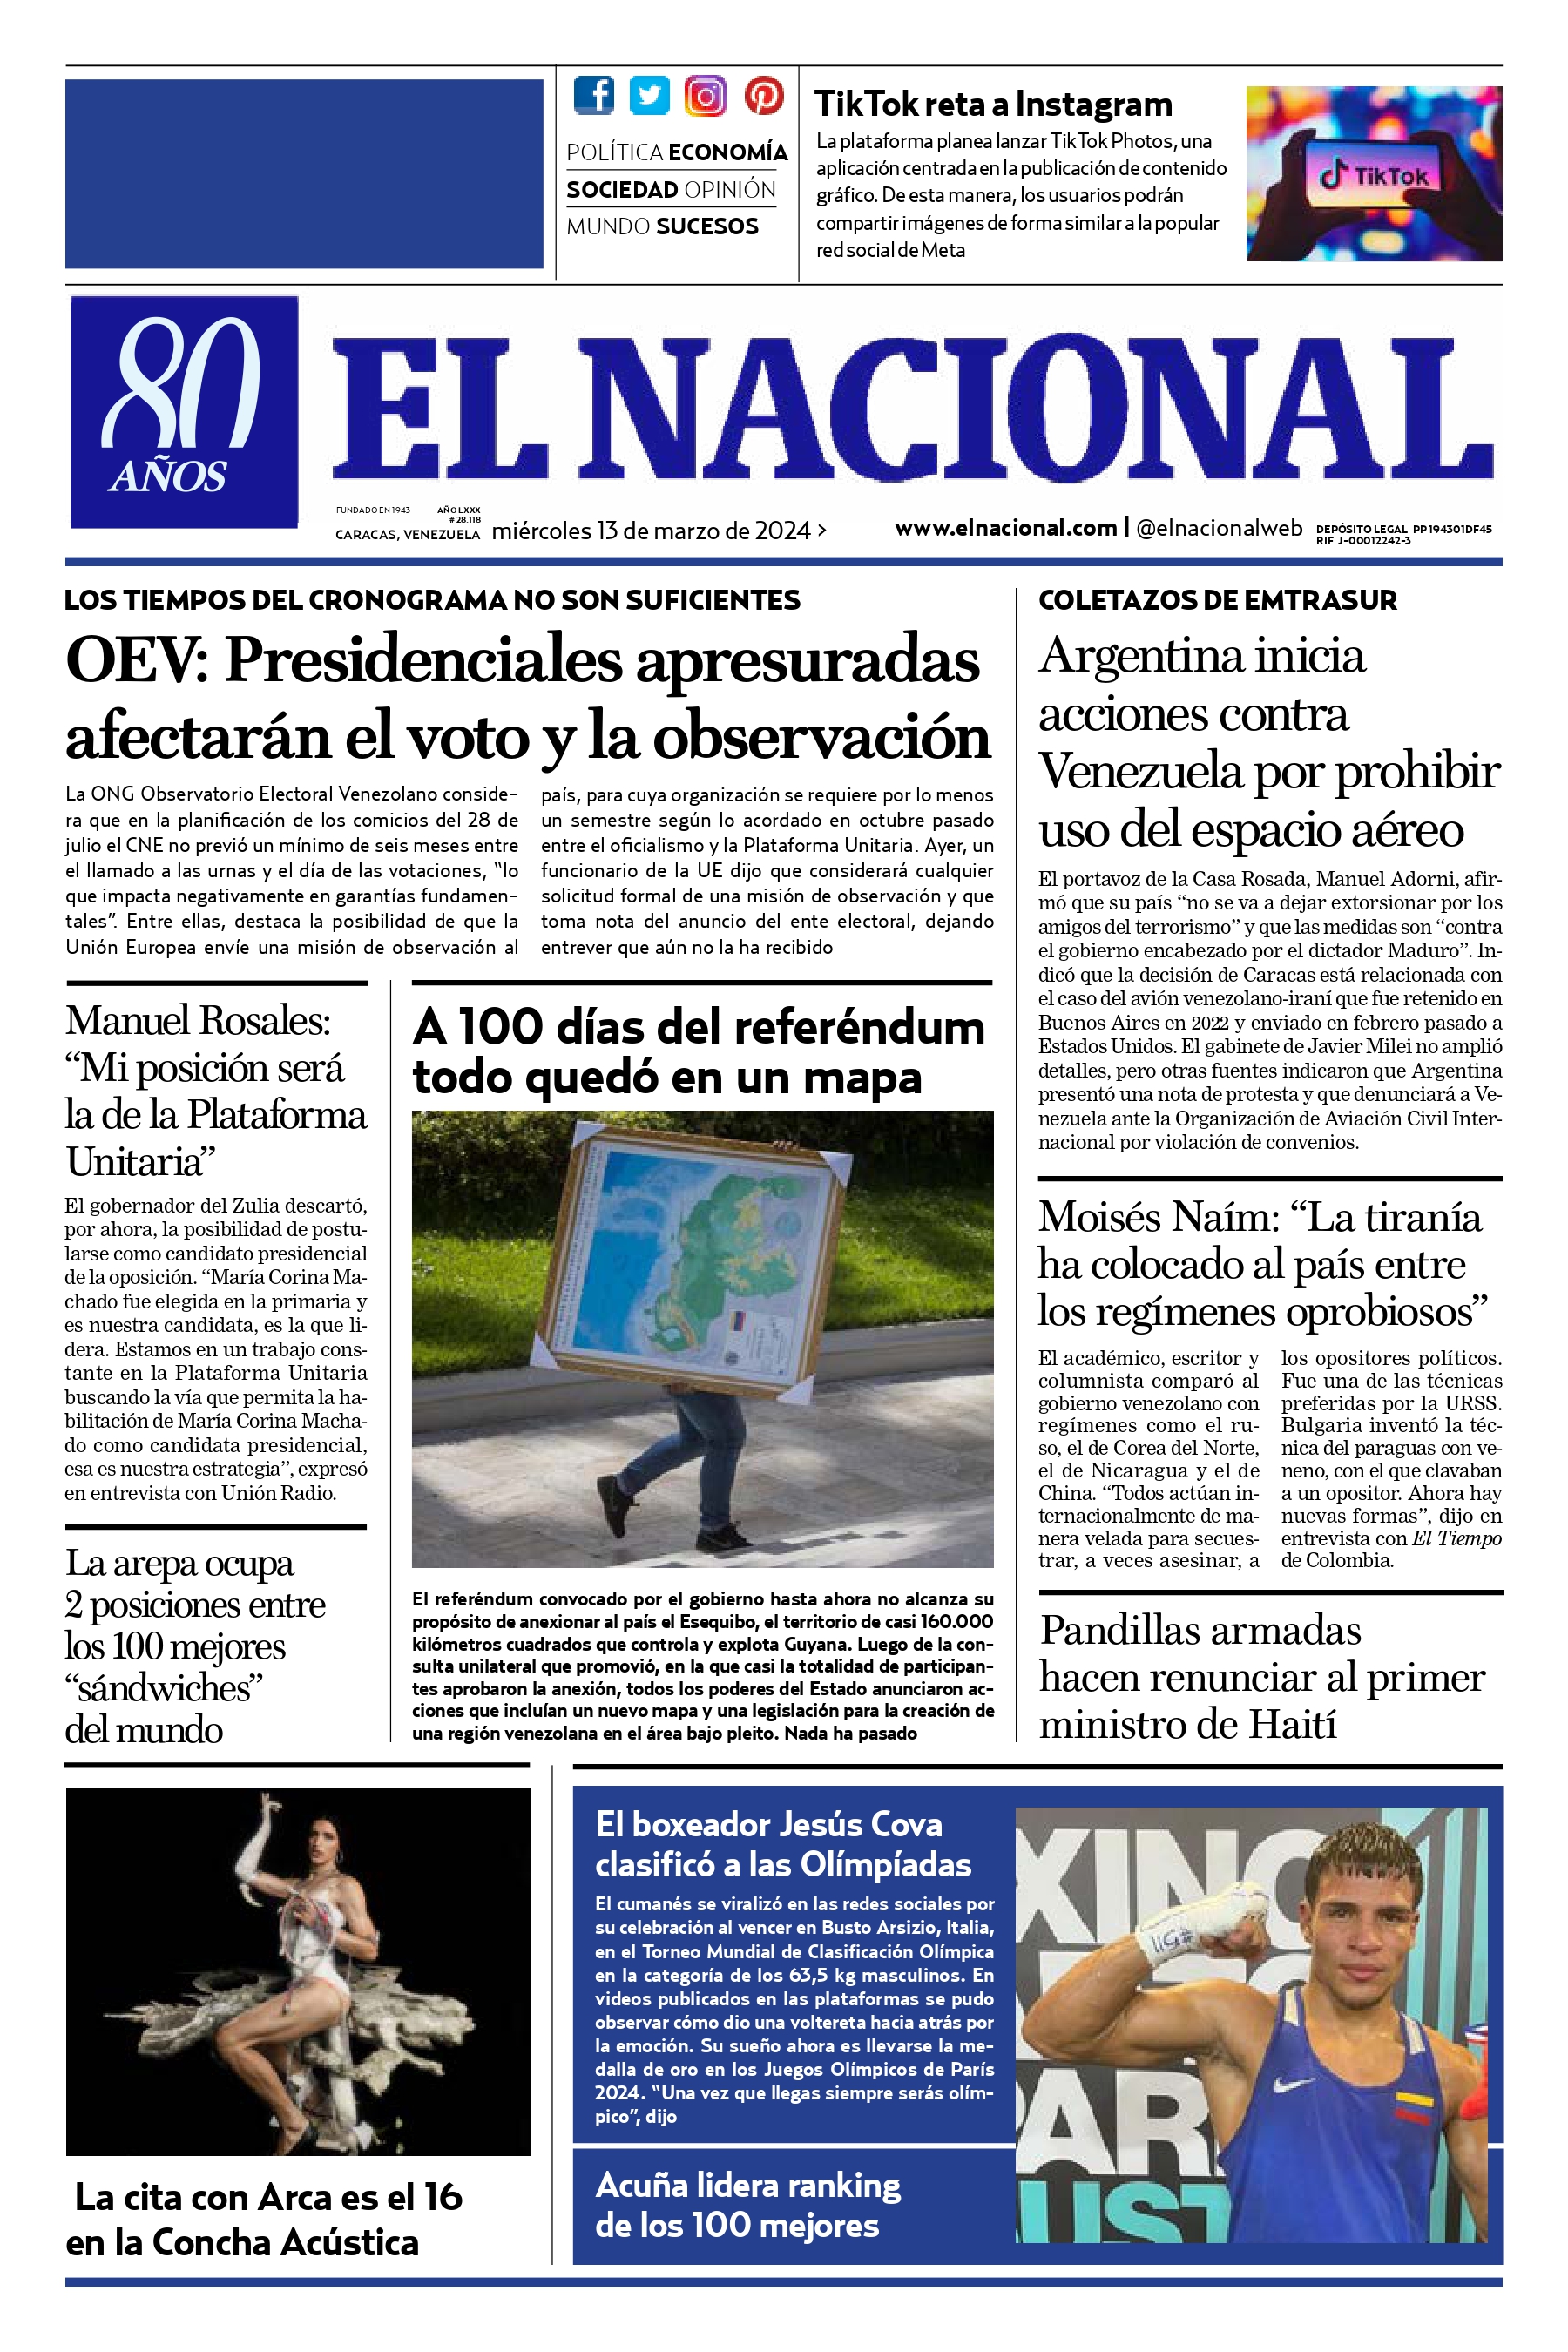 Diario El Nacional